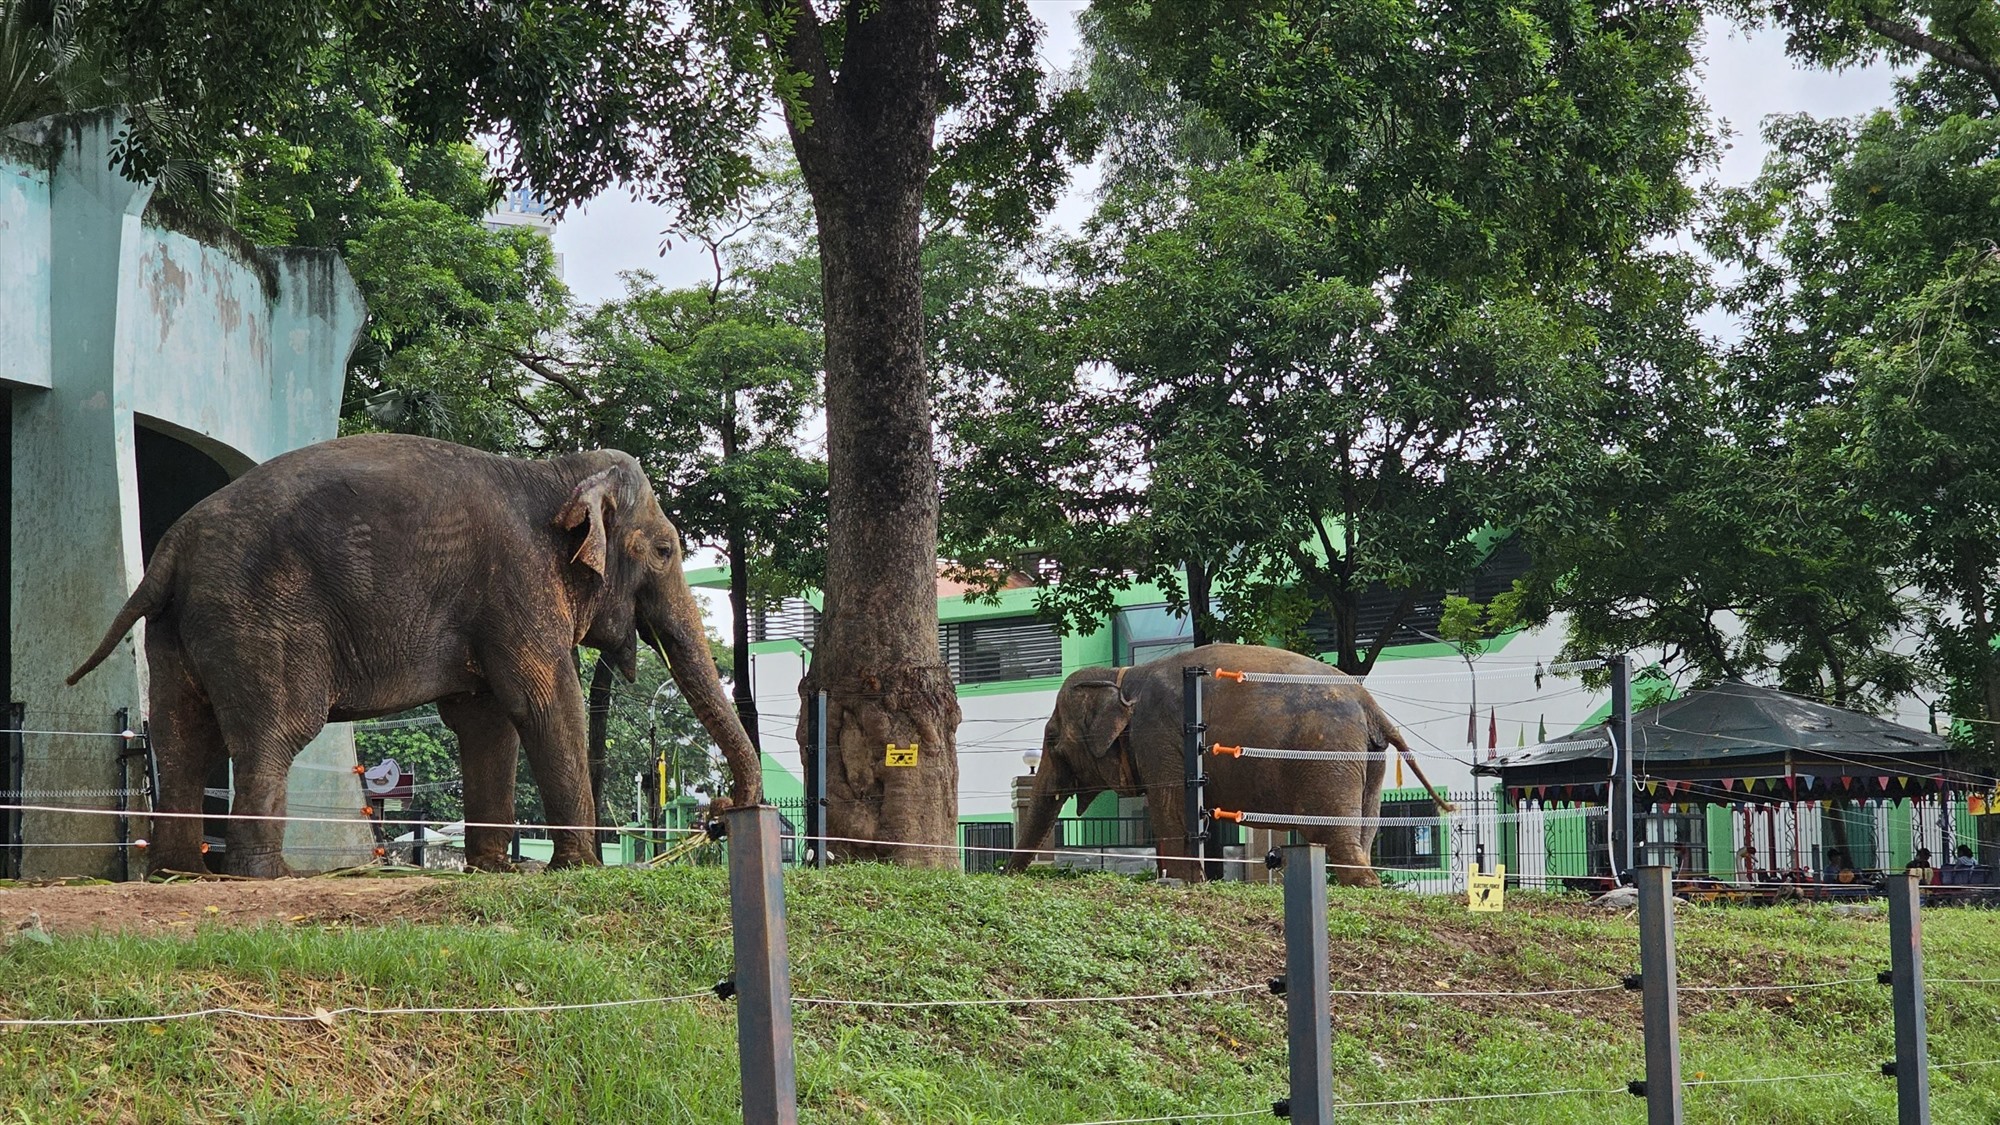 Theo Tổng giám đốc Công ty TNHH một thành viên Vườn thú Hà Nội Lê Sĩ Dũng, từ khi được tháo xích, hai cá thể voi thích nghi rất tốt. Kể cả khi hai cá thể gần hàng rào, đứng cạnh nhau cũng không xung đột, gây hấn.